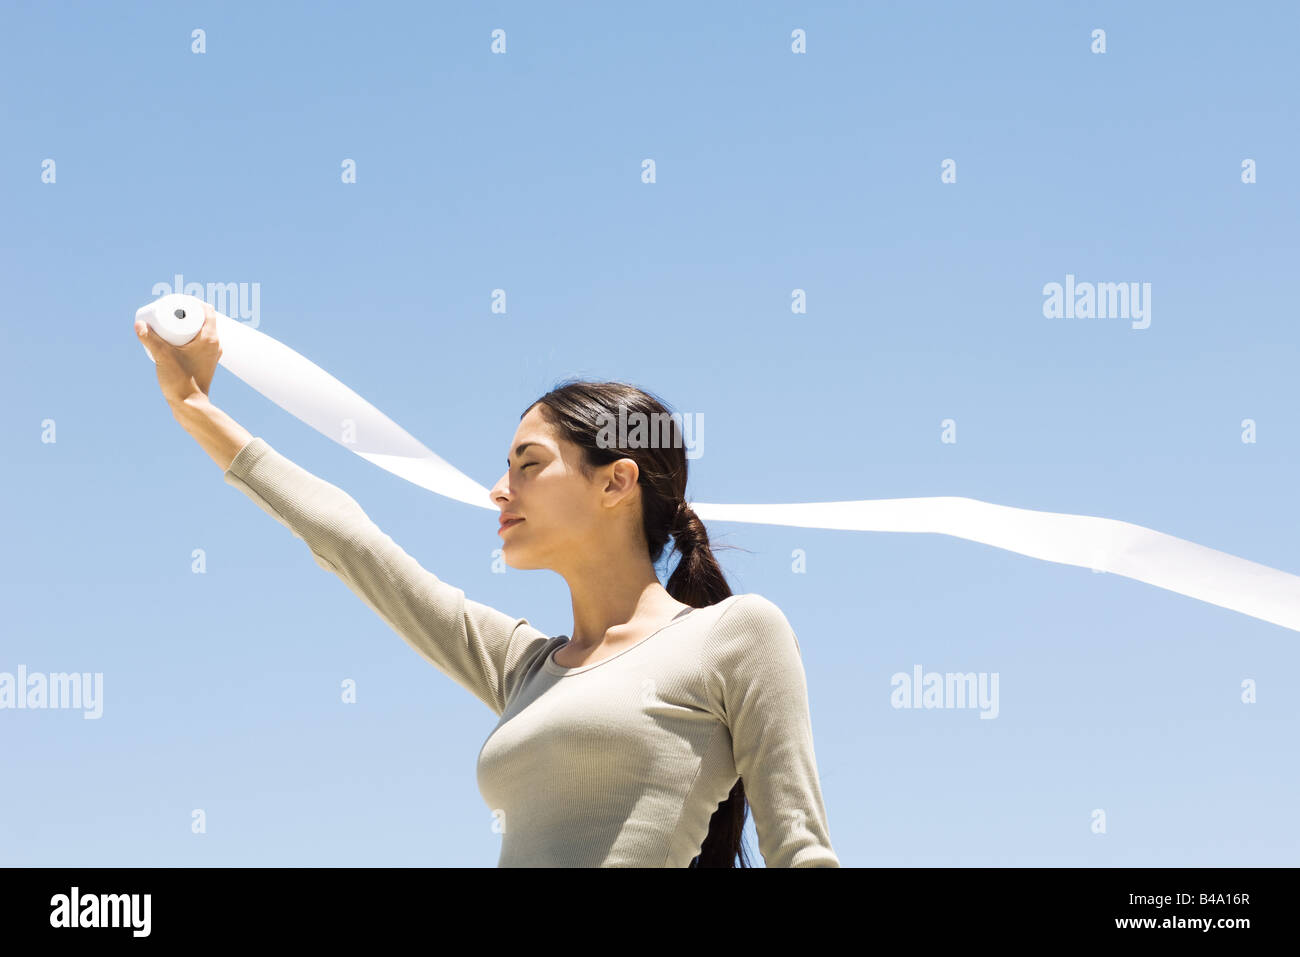 Woman holding up rouleau de papier à l'extérieur, les yeux clos, low angle view Banque D'Images